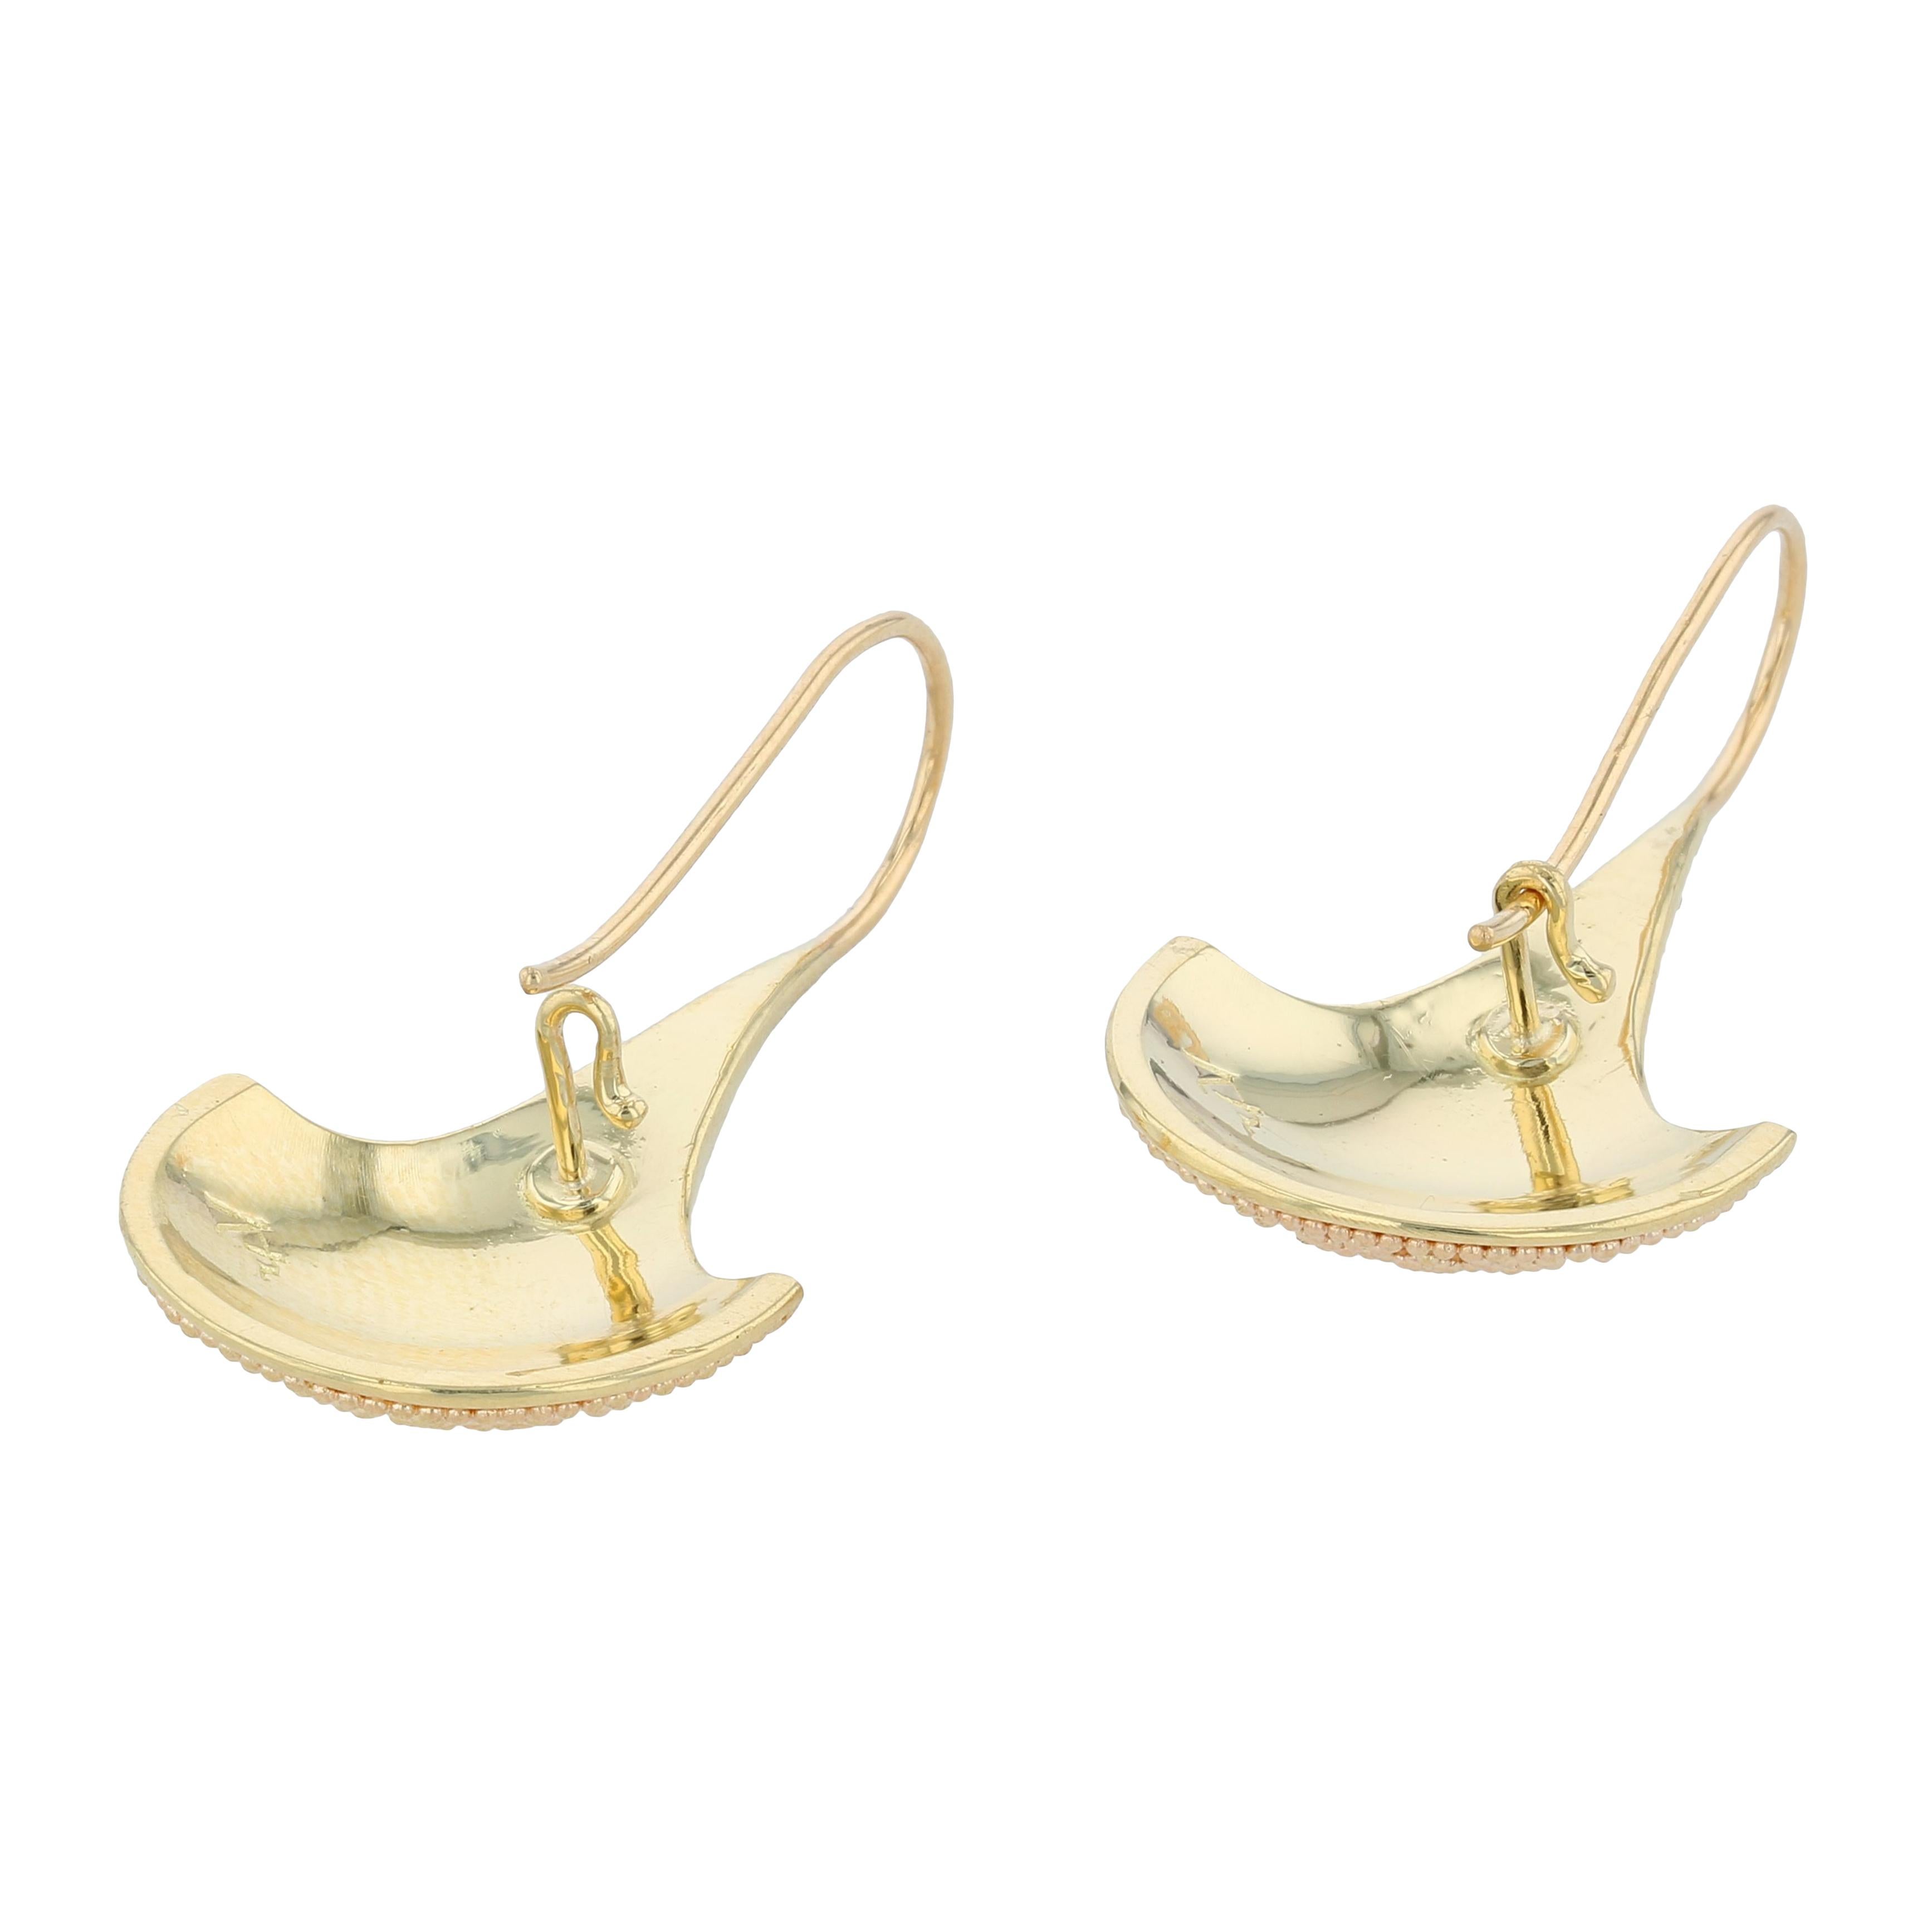 Kent Raible's 18 Karat Gold 'Fan' Dangle Earrings with fine Granulation For Sale 2